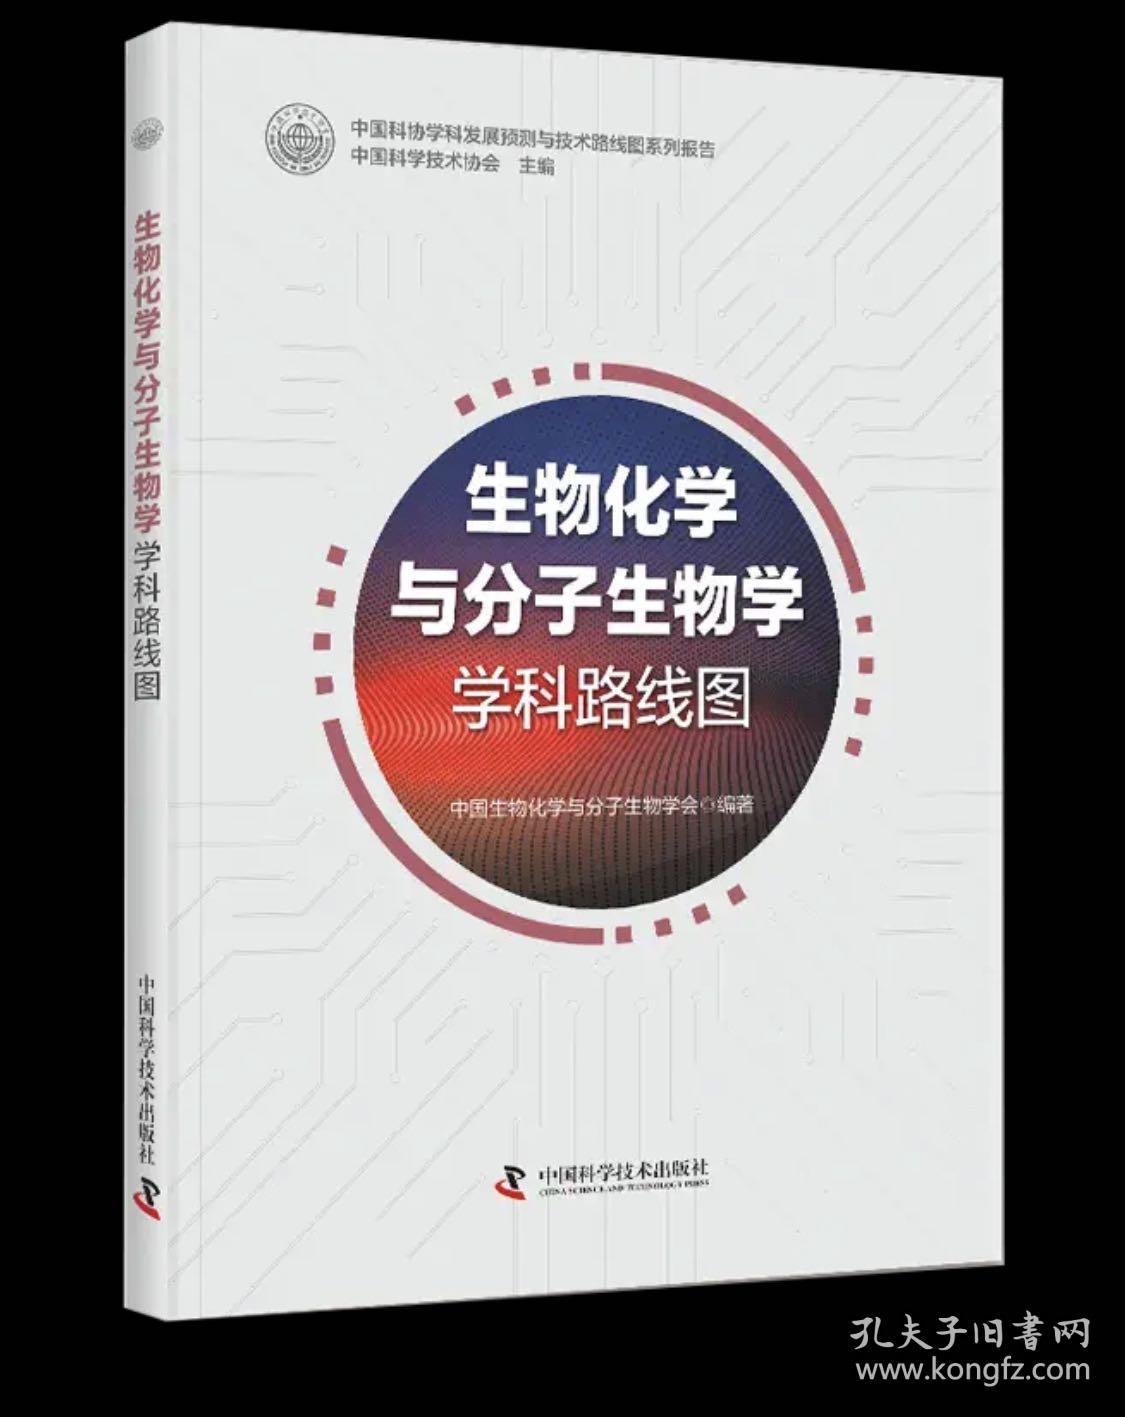 生物化学与分子生物学学科路线图 中国科学技术协会主编 ; 中国生物化学与分子生物学会编著